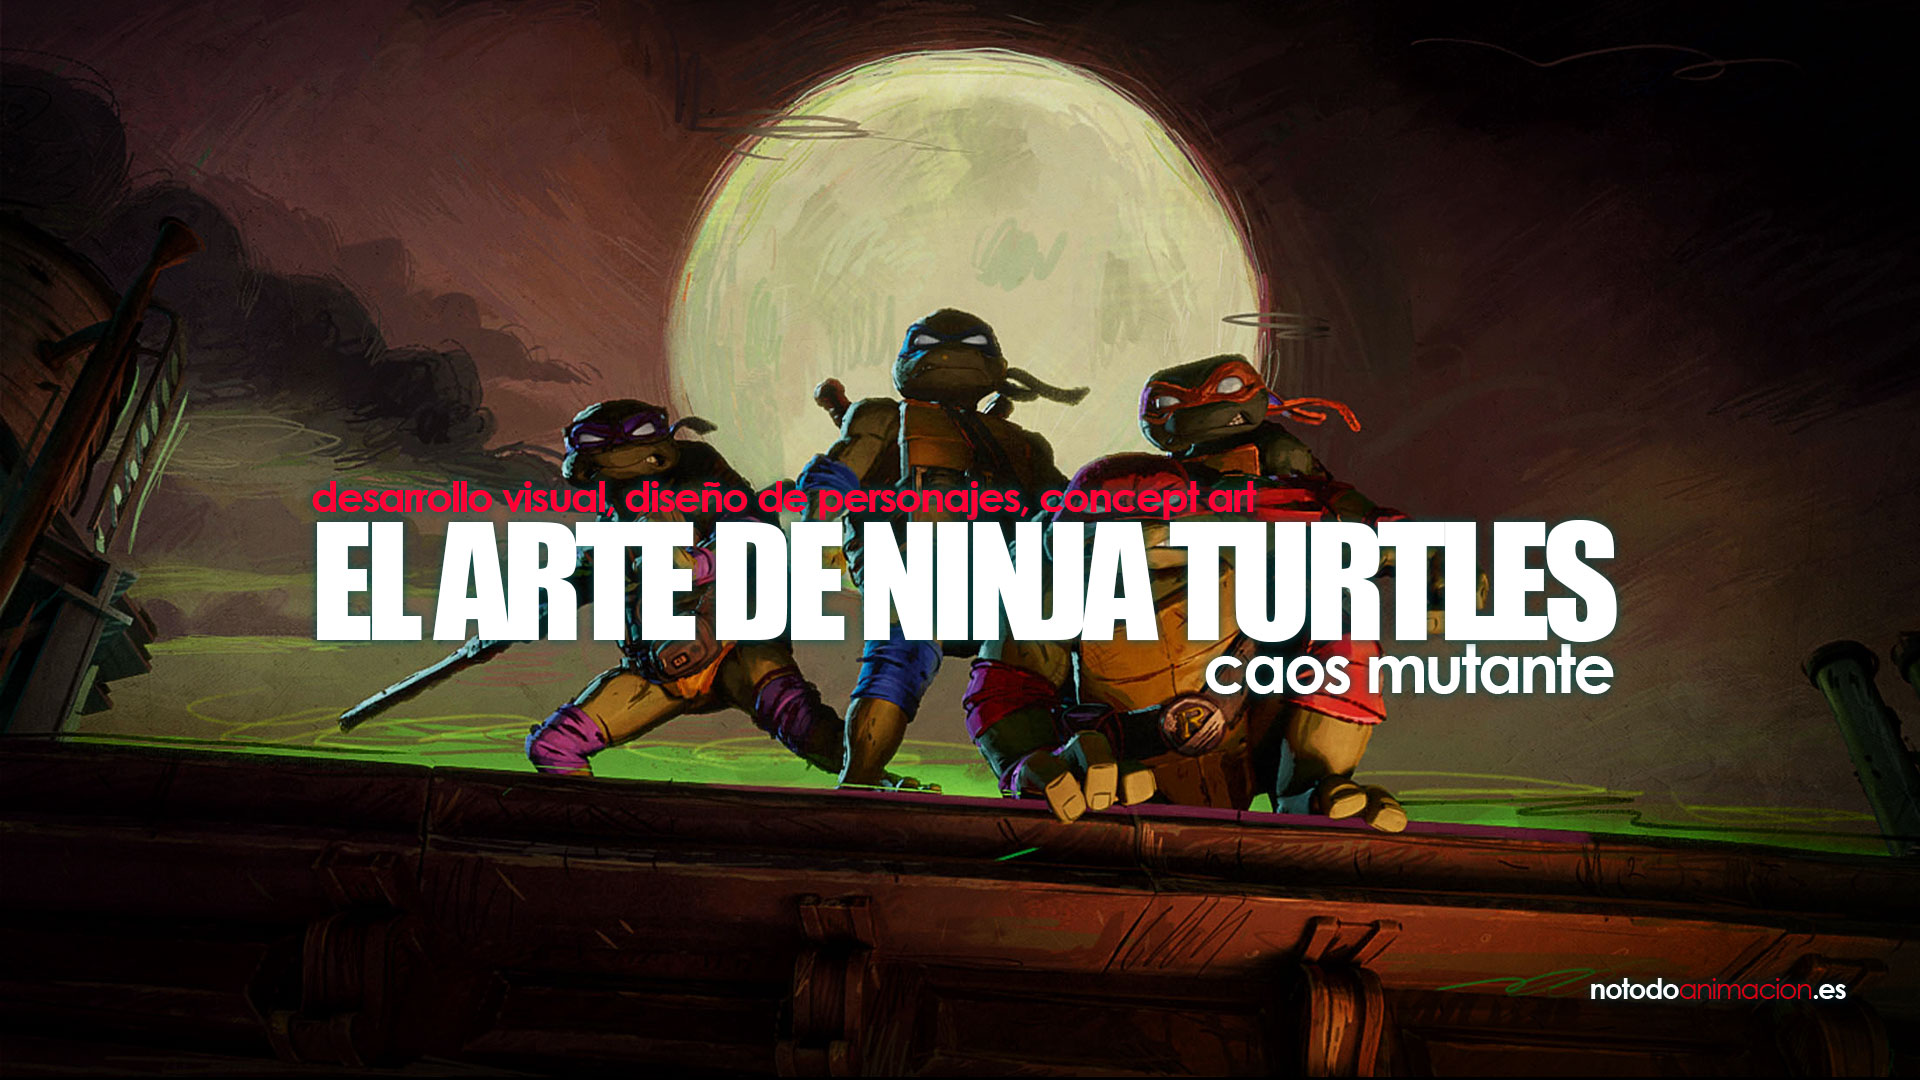 Diseño de Tortugas Ninja crea controversia, Entretenimiento